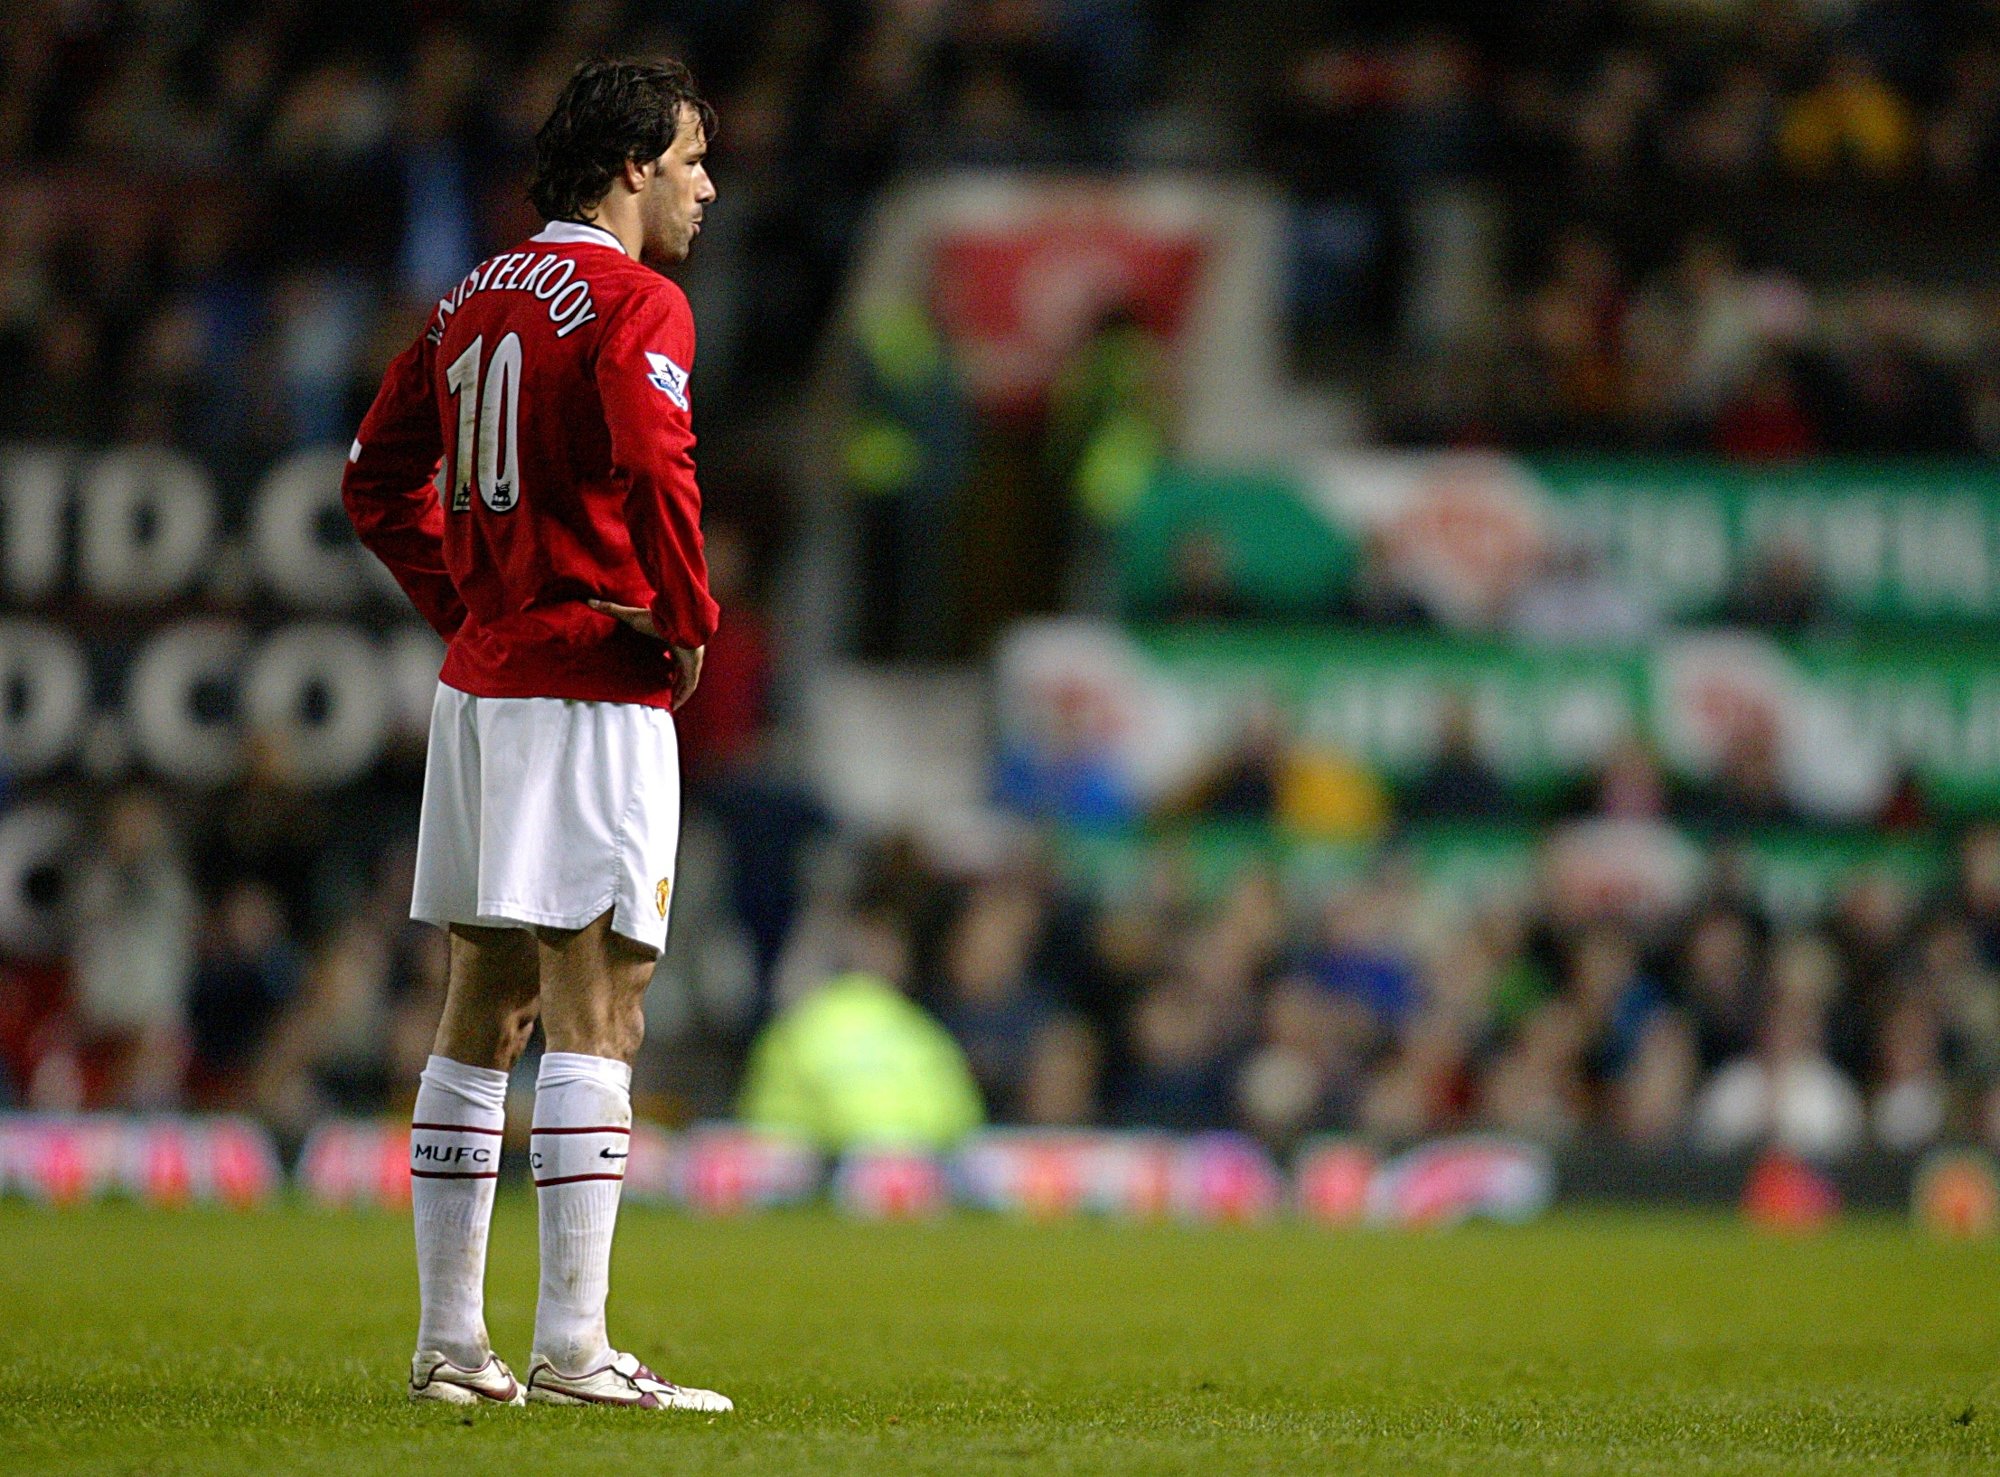 Goalkeepers couldn't get near Ruud Van Nistelrooy: Wayne Rooney - Articles